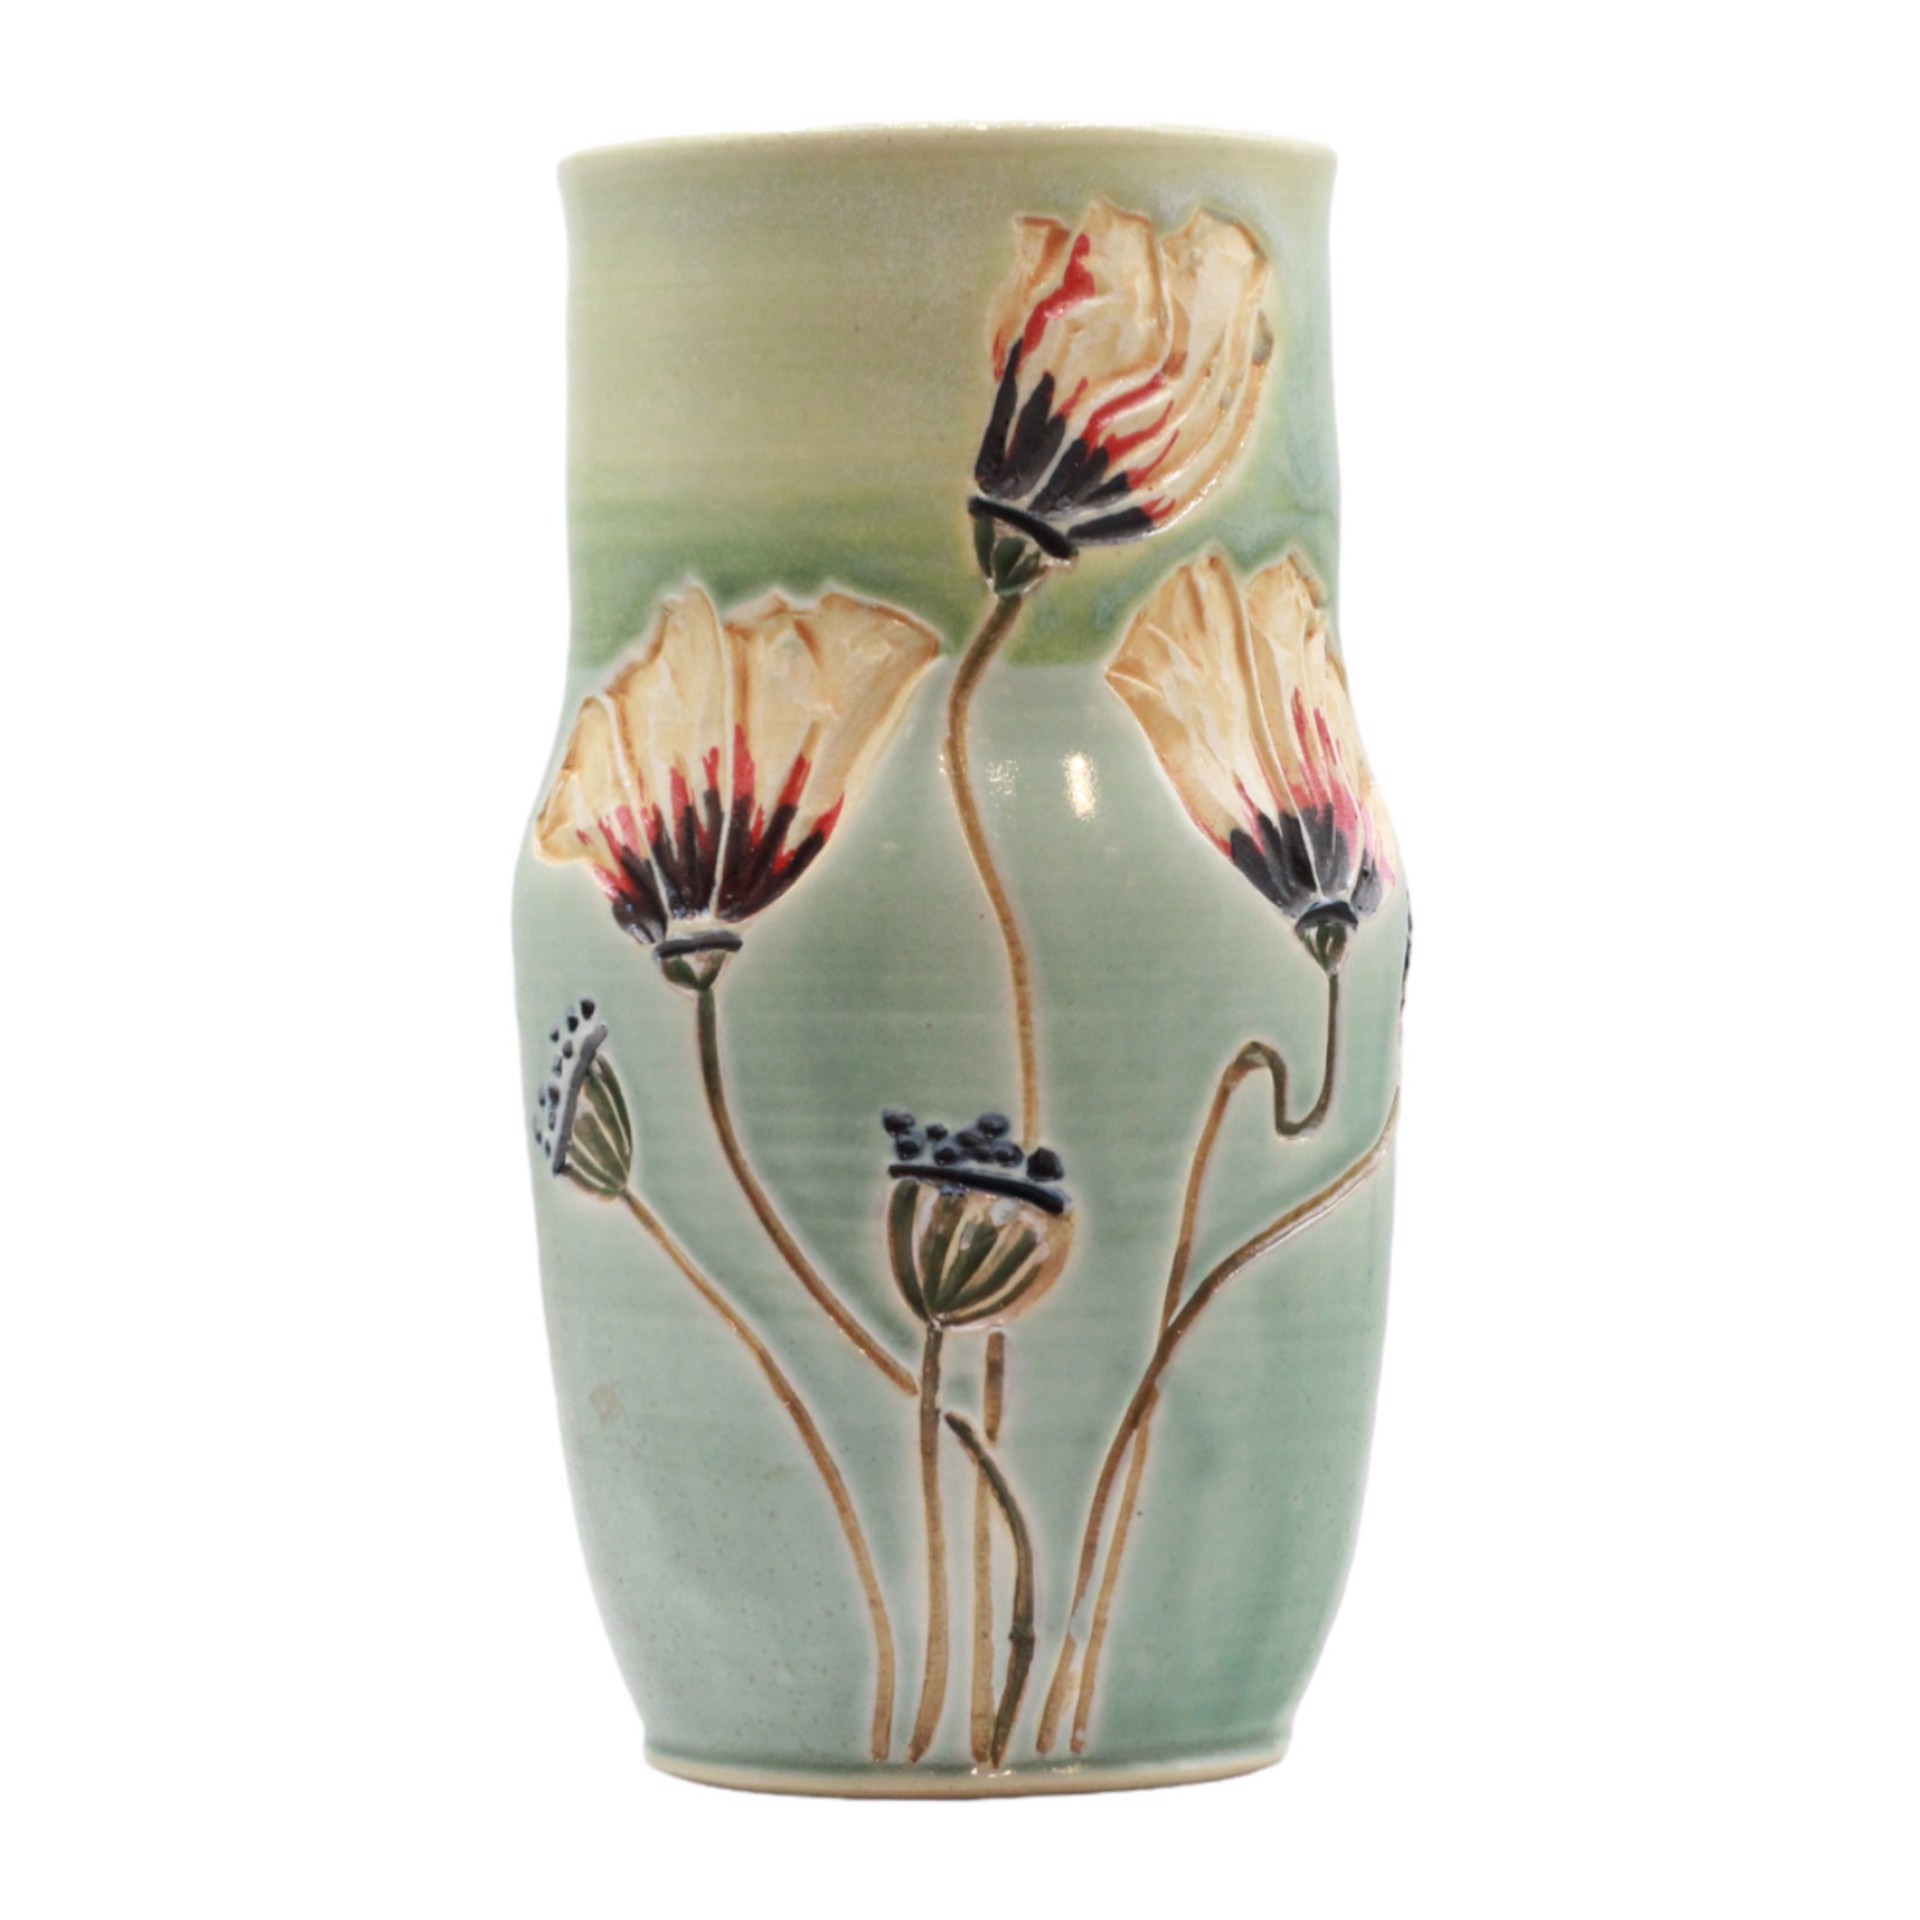 Poppy Vase by Katie Redfield